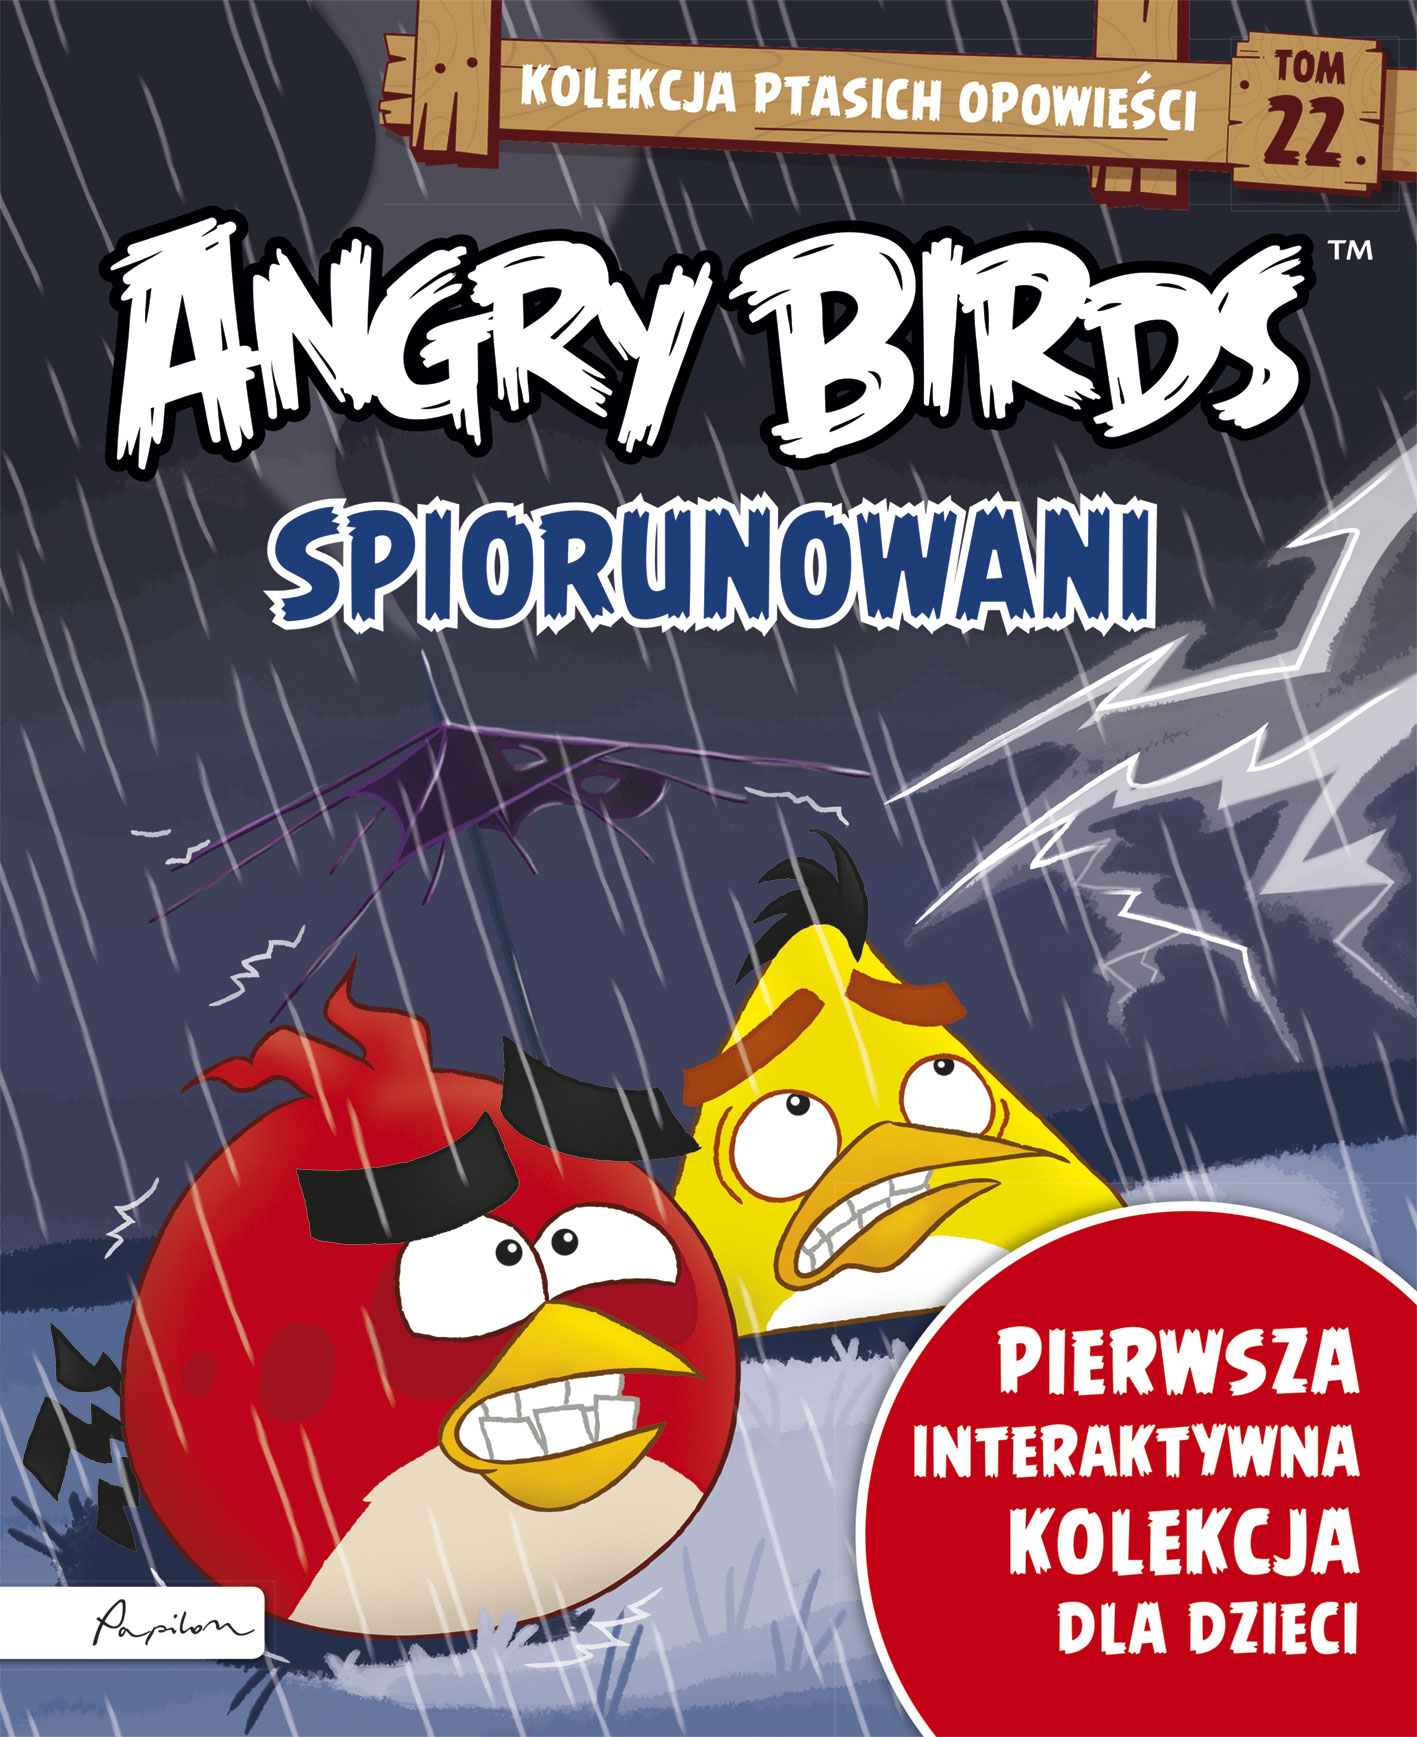 Angry Birds. Kolekcja ptasich opowieści 22. Spiorunowani